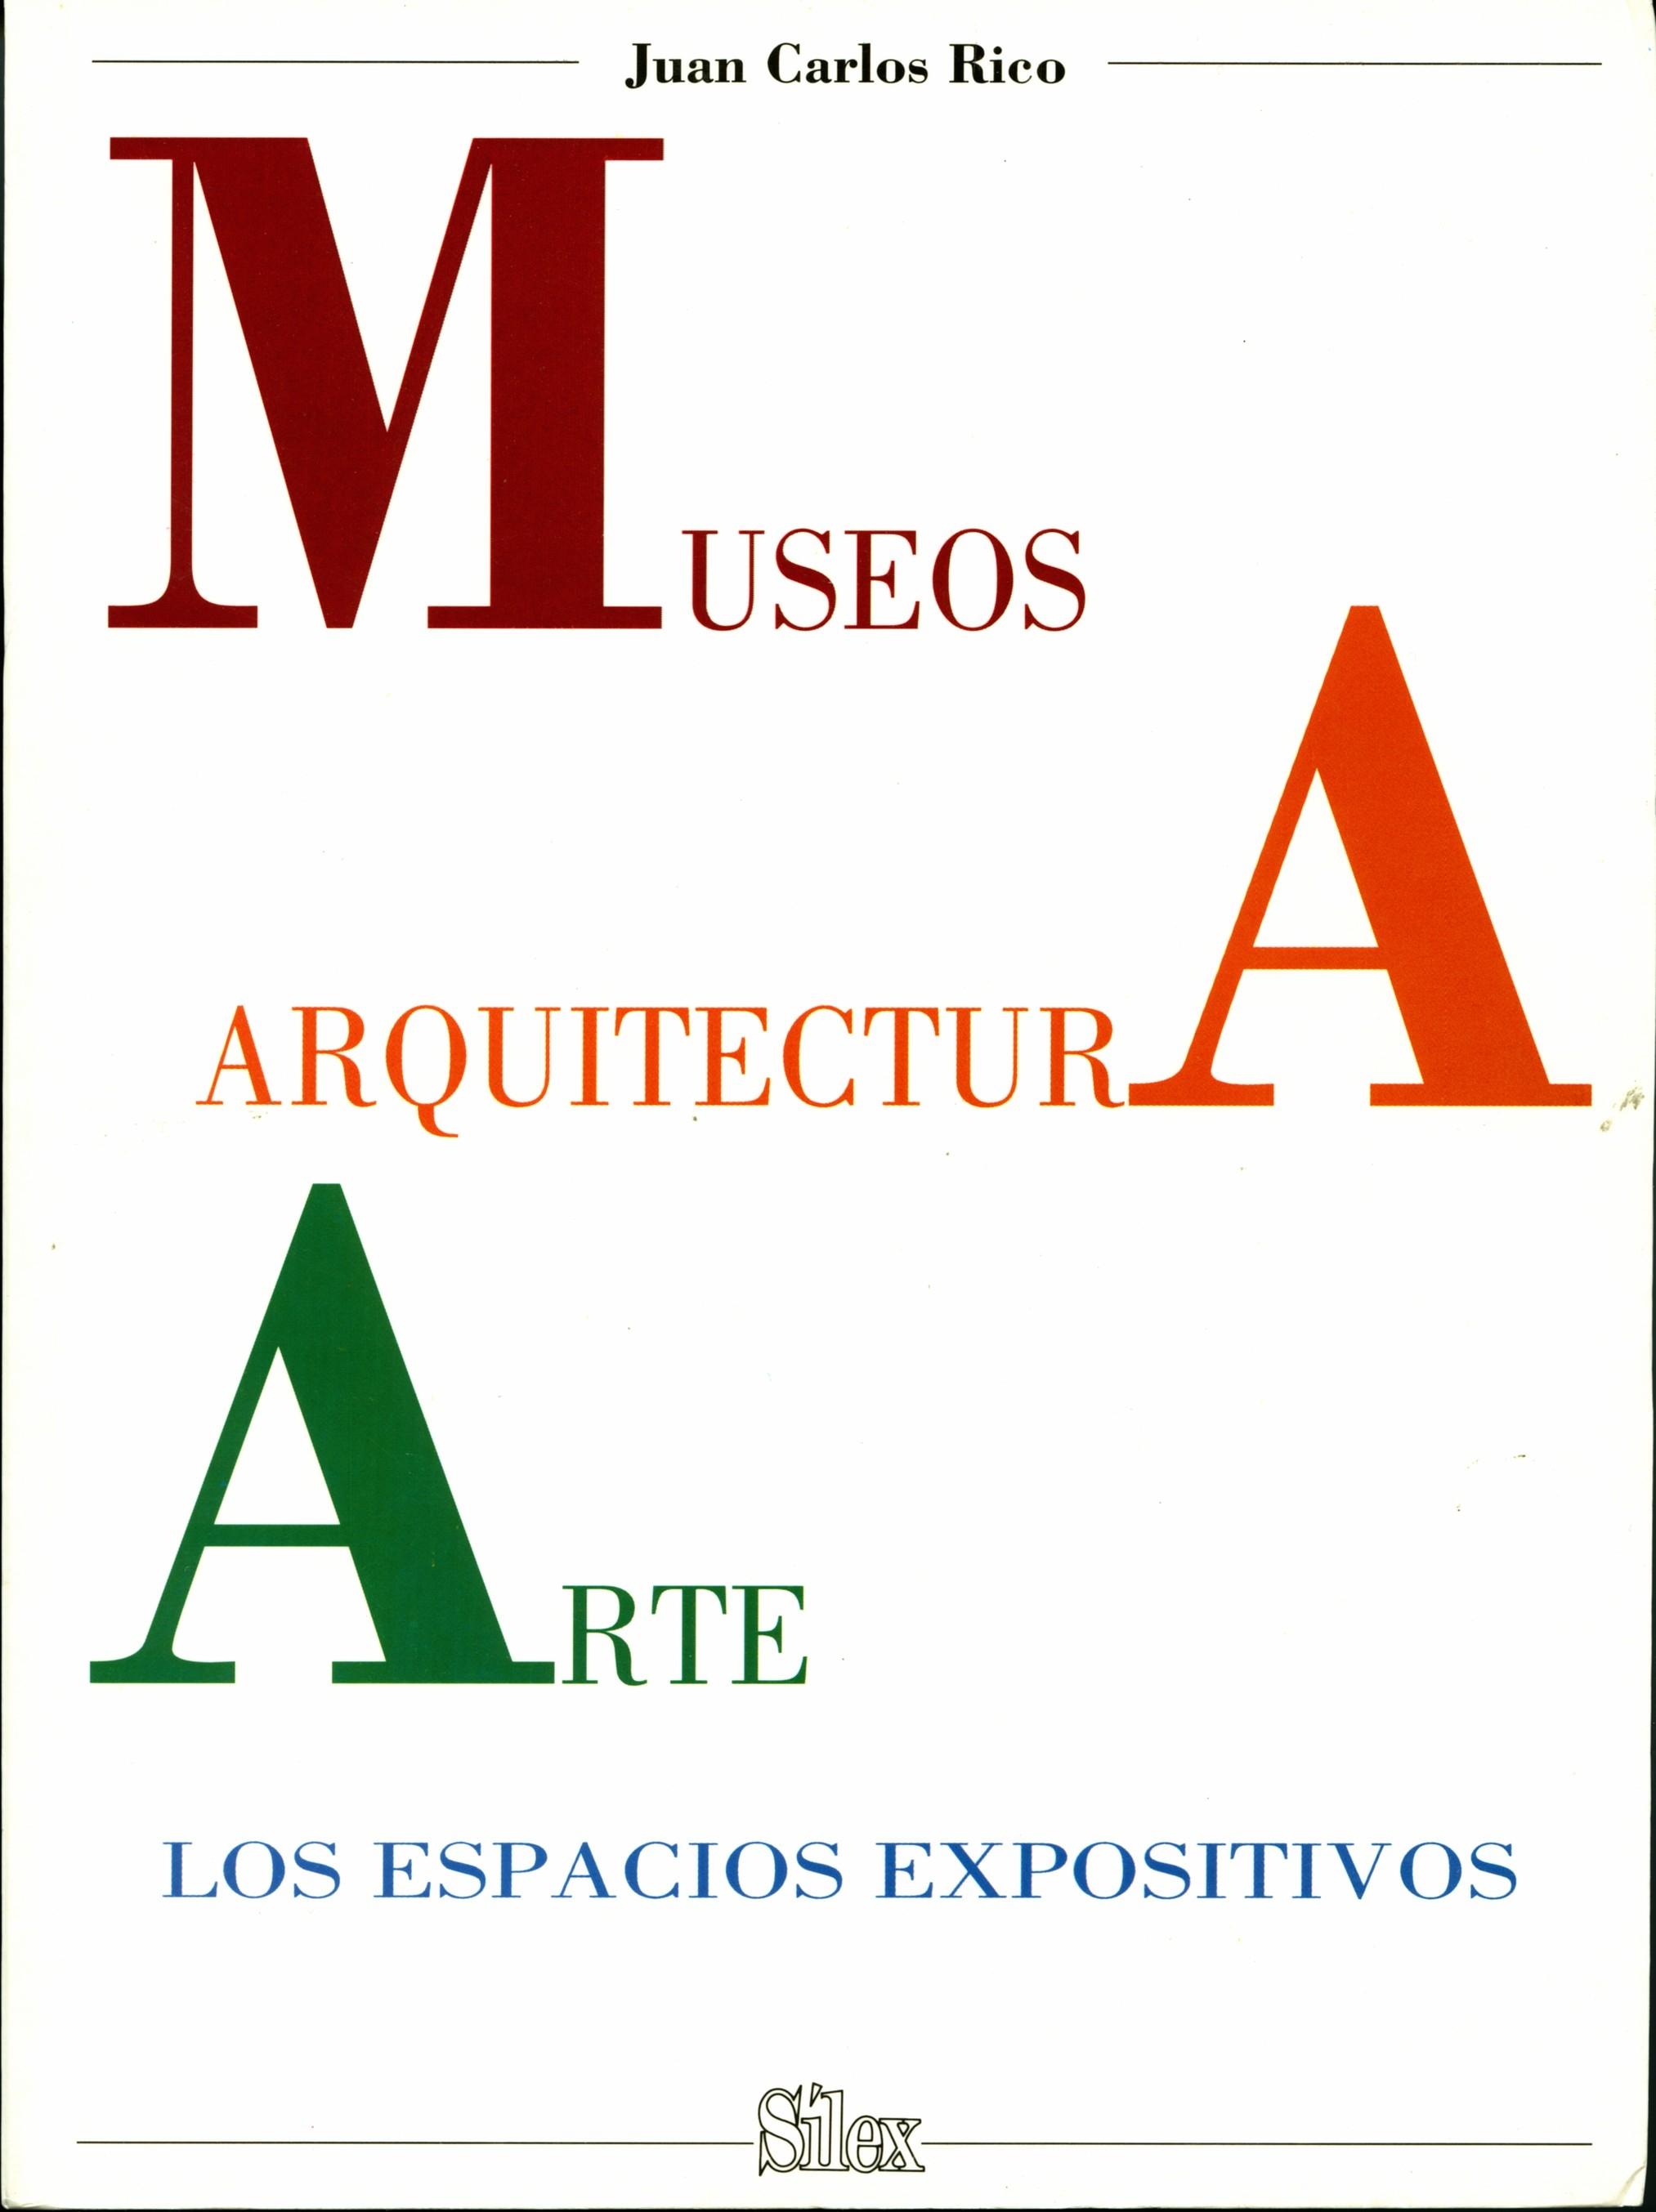 MUSEOS, ARQUITECTURA, ARTE "LOS ESPACIOS EXPOSITIVOS"